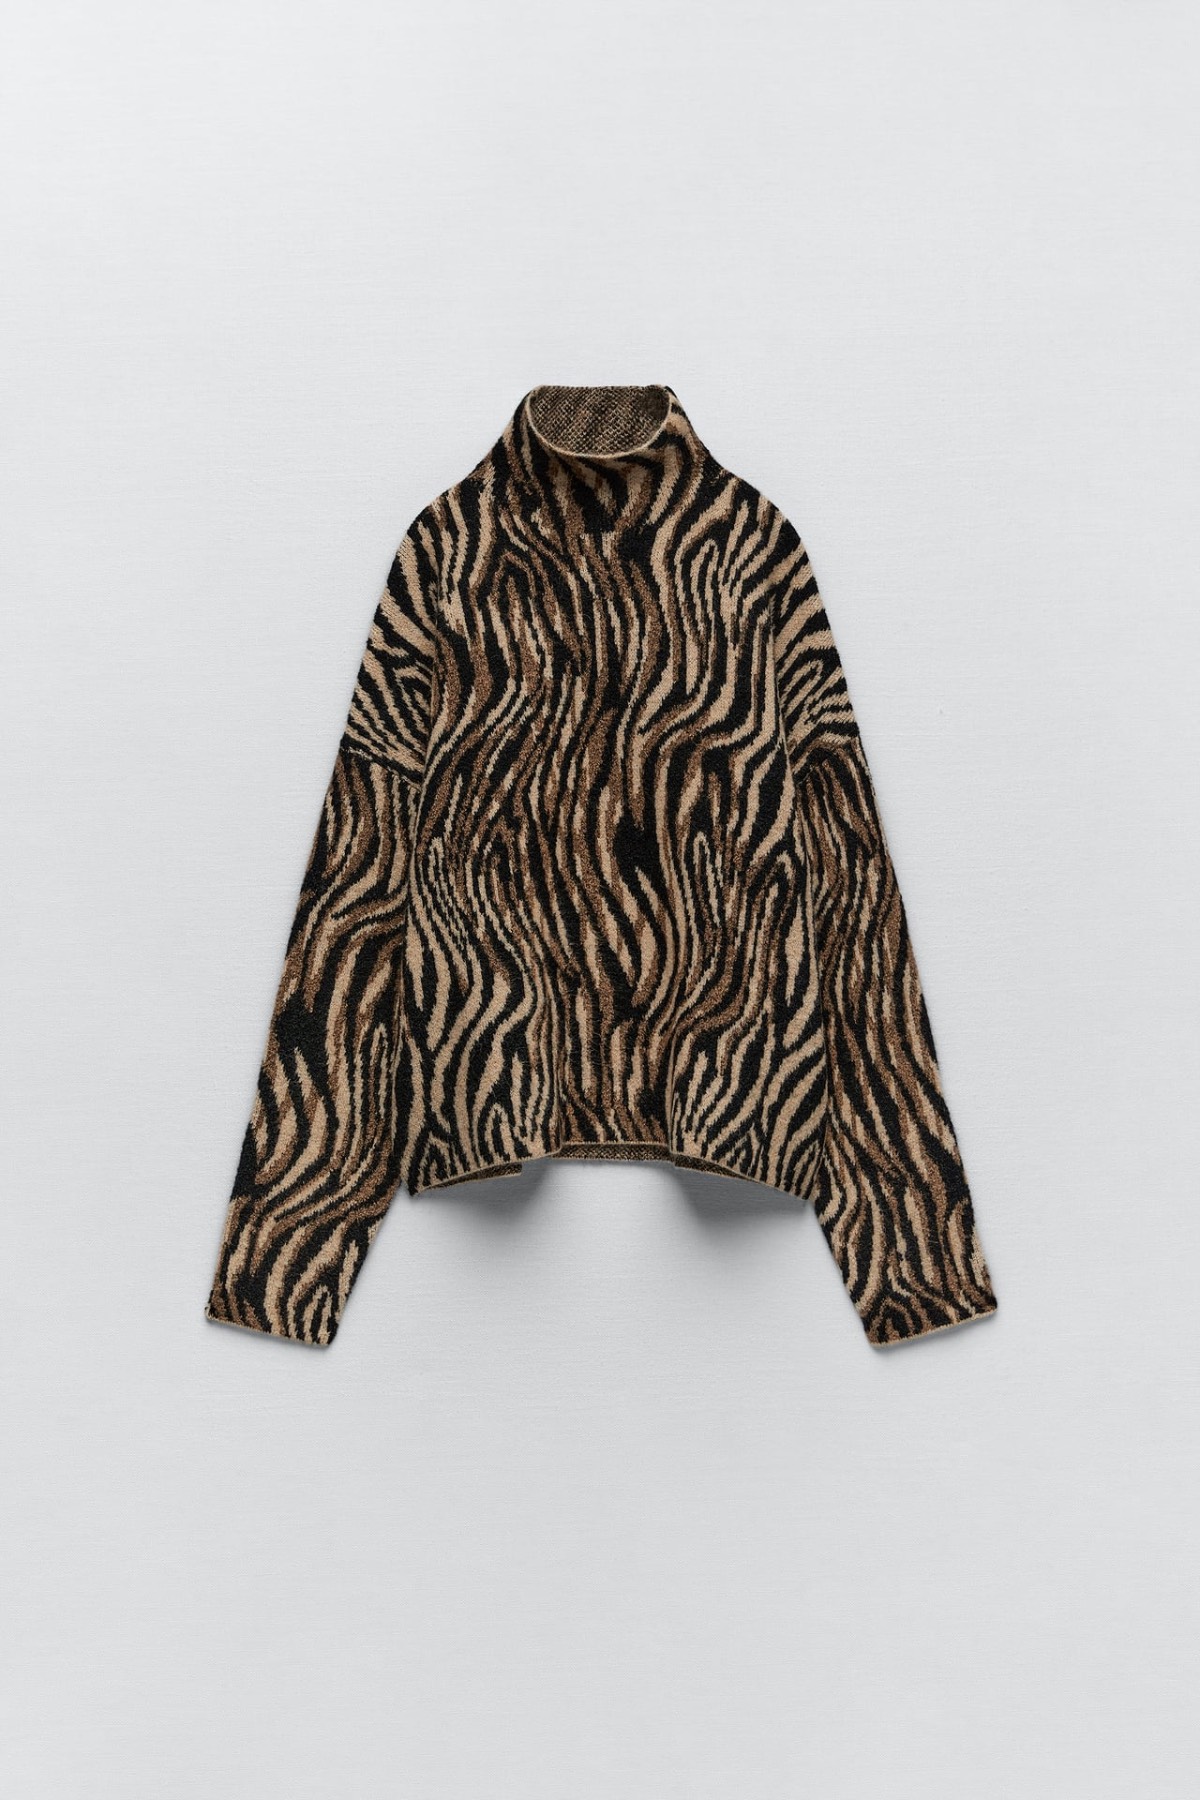 Jersey Leopardo de Zara